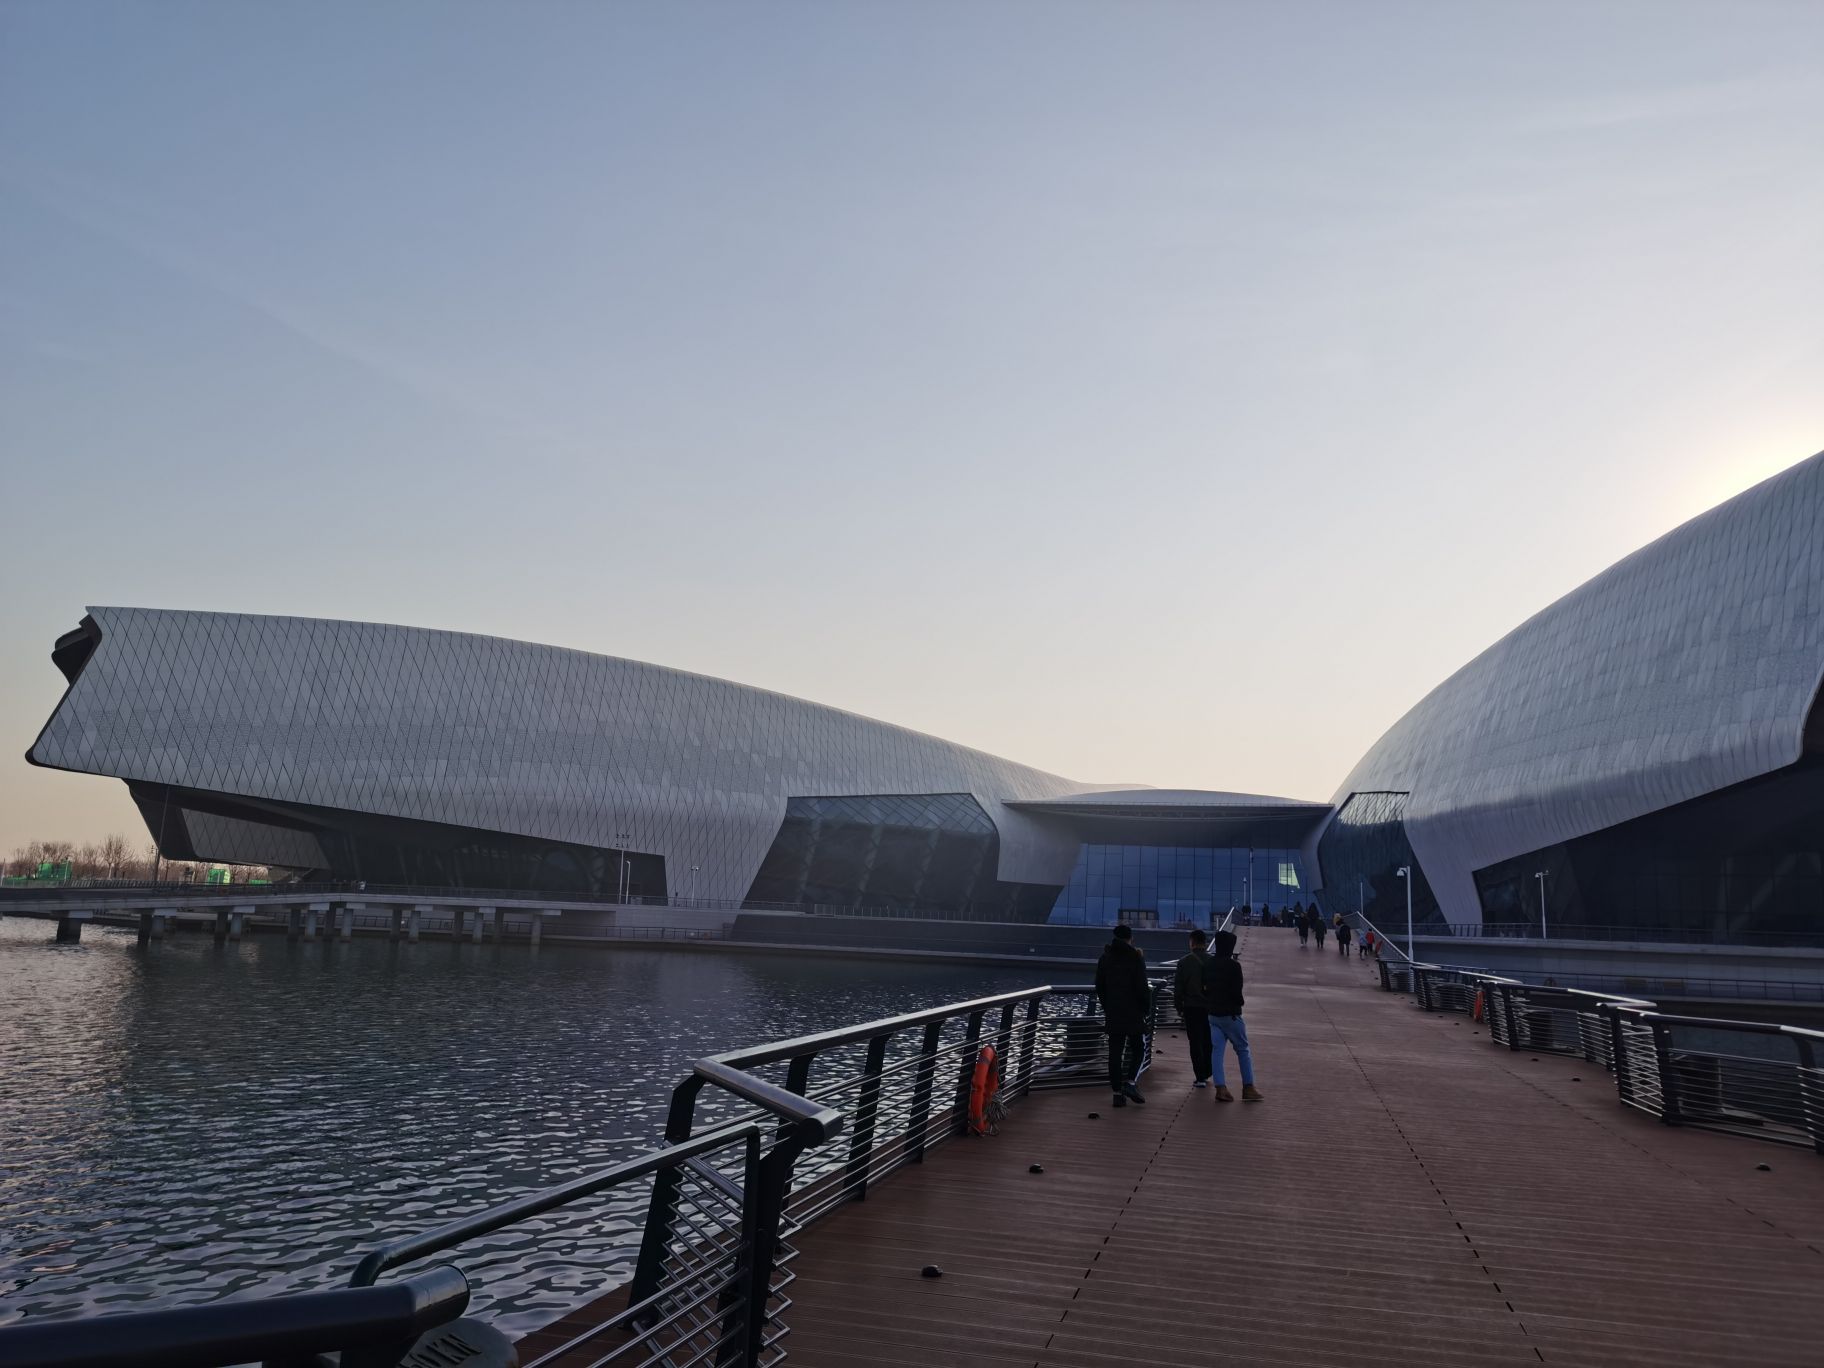 中国国家海洋博物馆船体状屋顶群 - 普象网